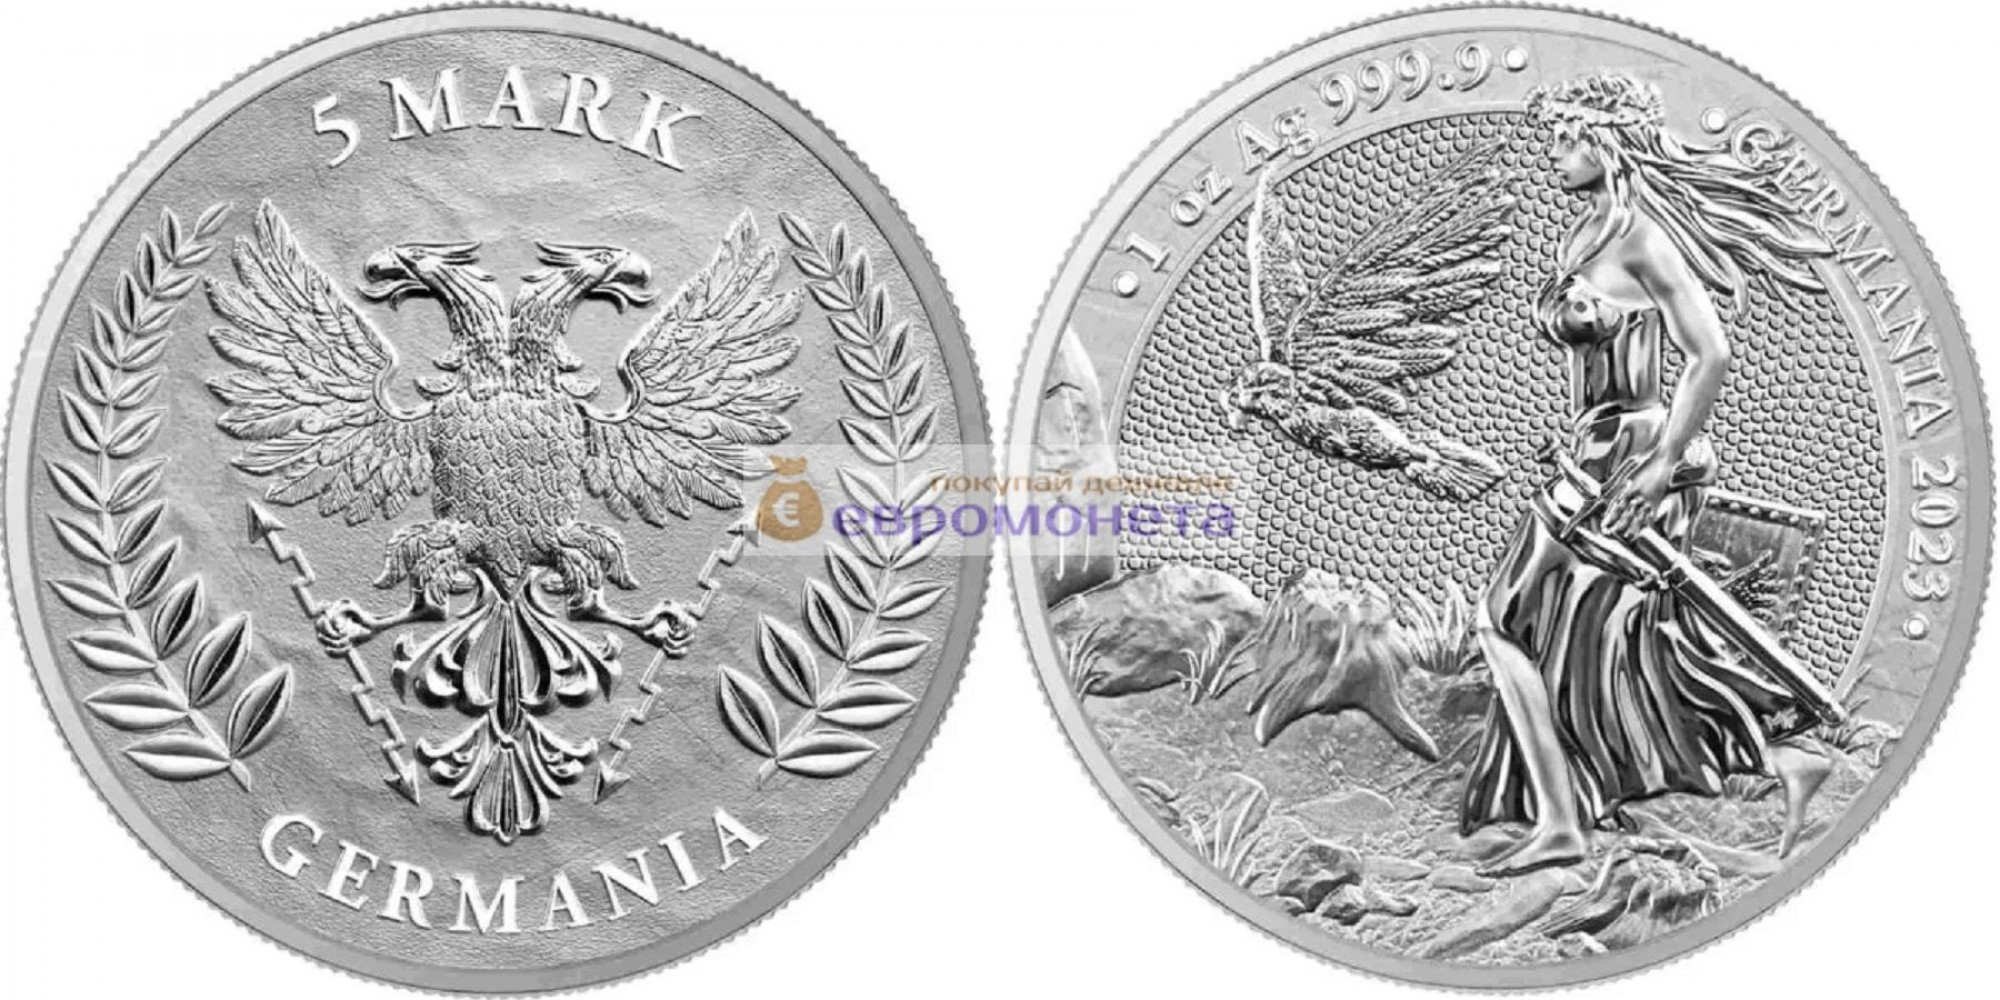 Германия 5 марок 2023 год 1 унция серебра 9999 пробы. Germania Mint тираж 25 000 шт.